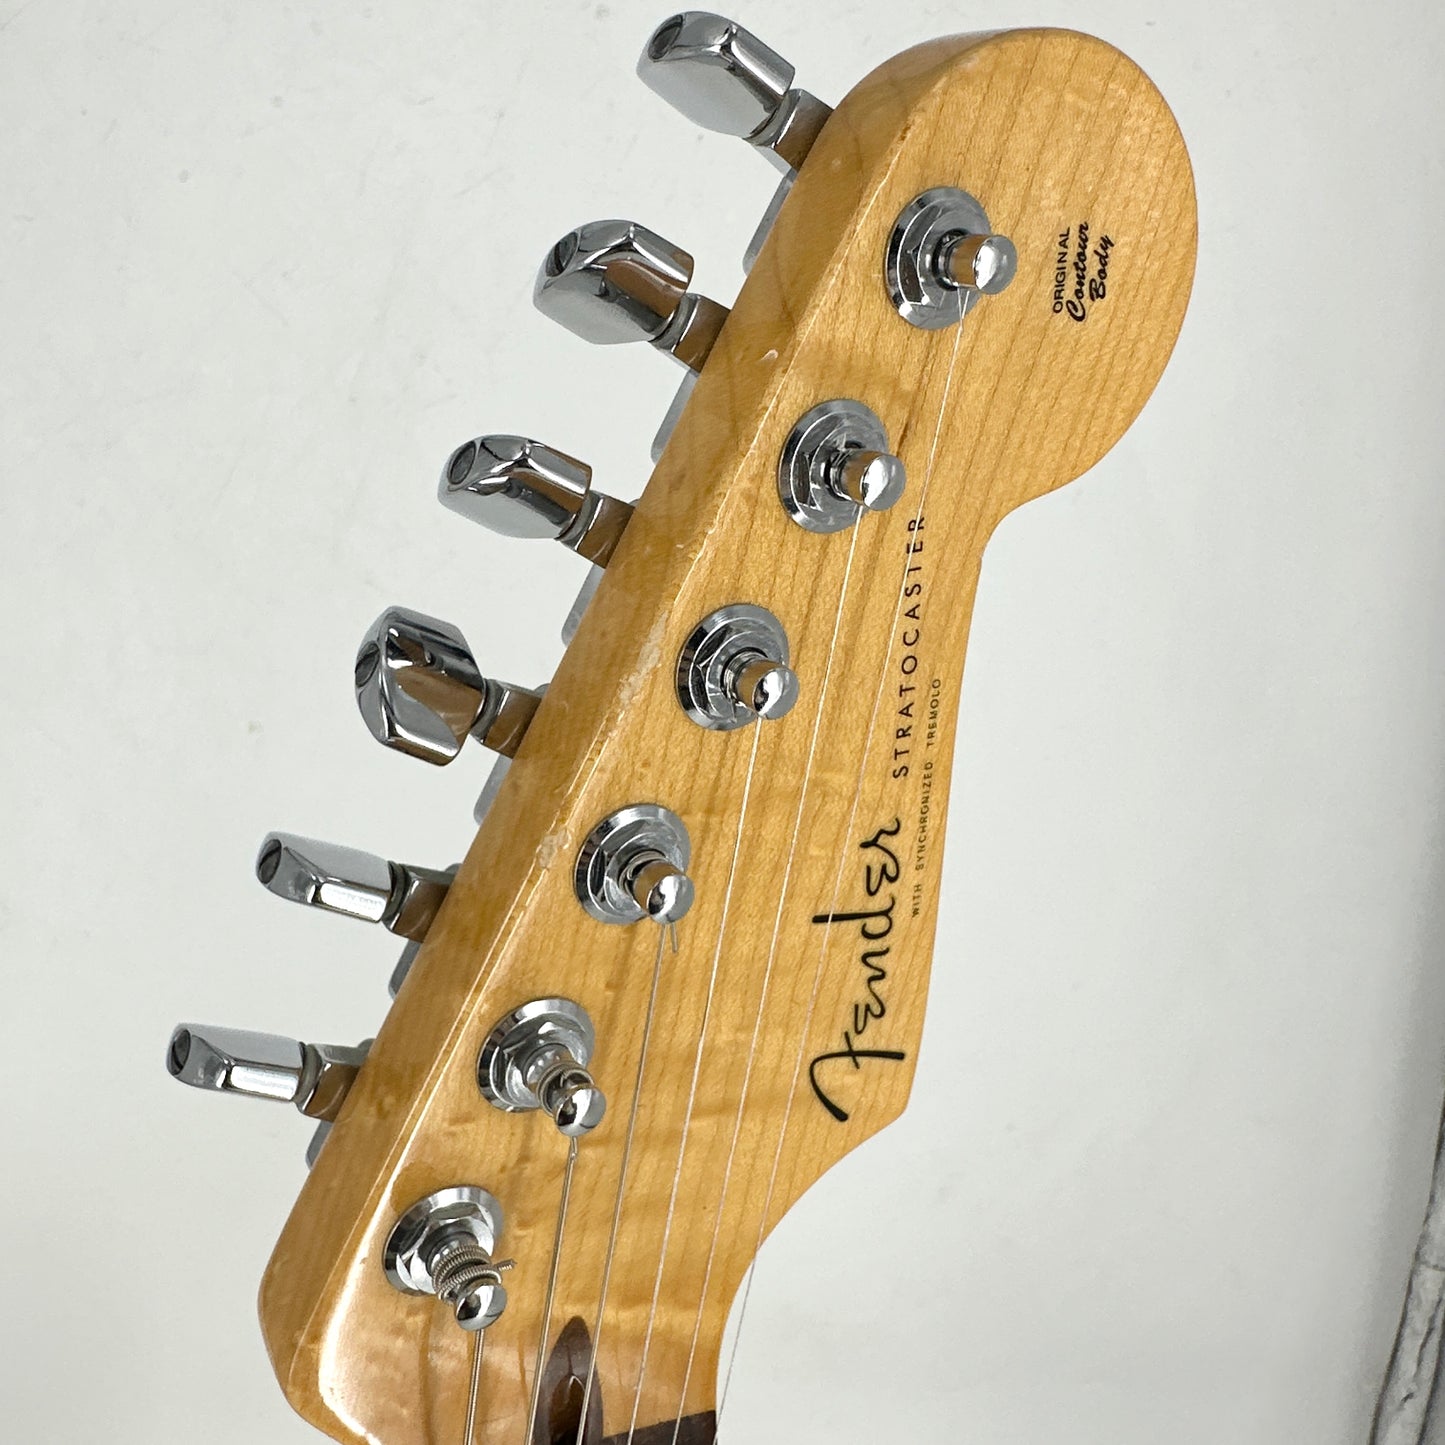 2011 Fender Custom Shop Custom Deluxe Stratocaster - Abby pickups – Vintage White